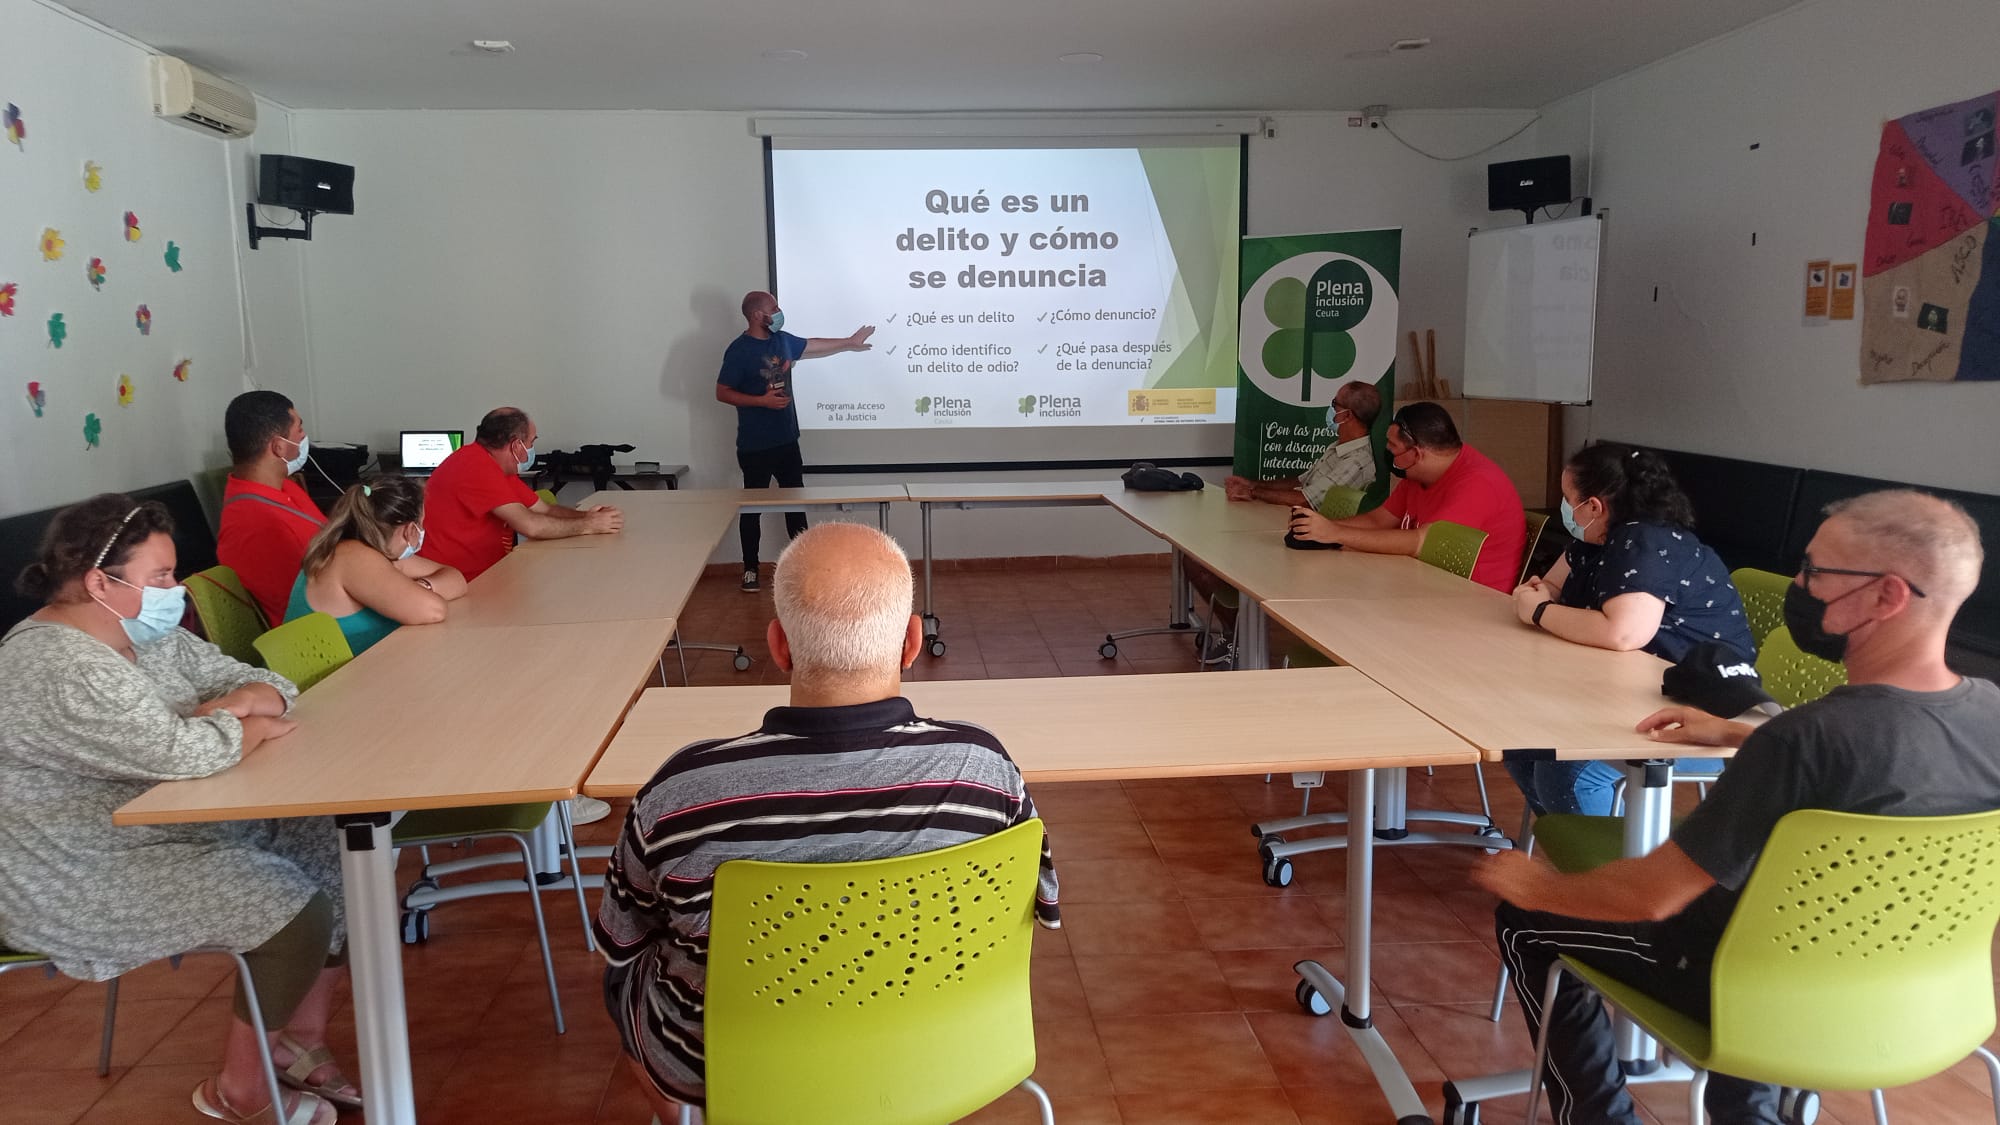 Ir a Plena inclusión Ceuta imparte un taller sobre qué es un delito y cómo se denuncia